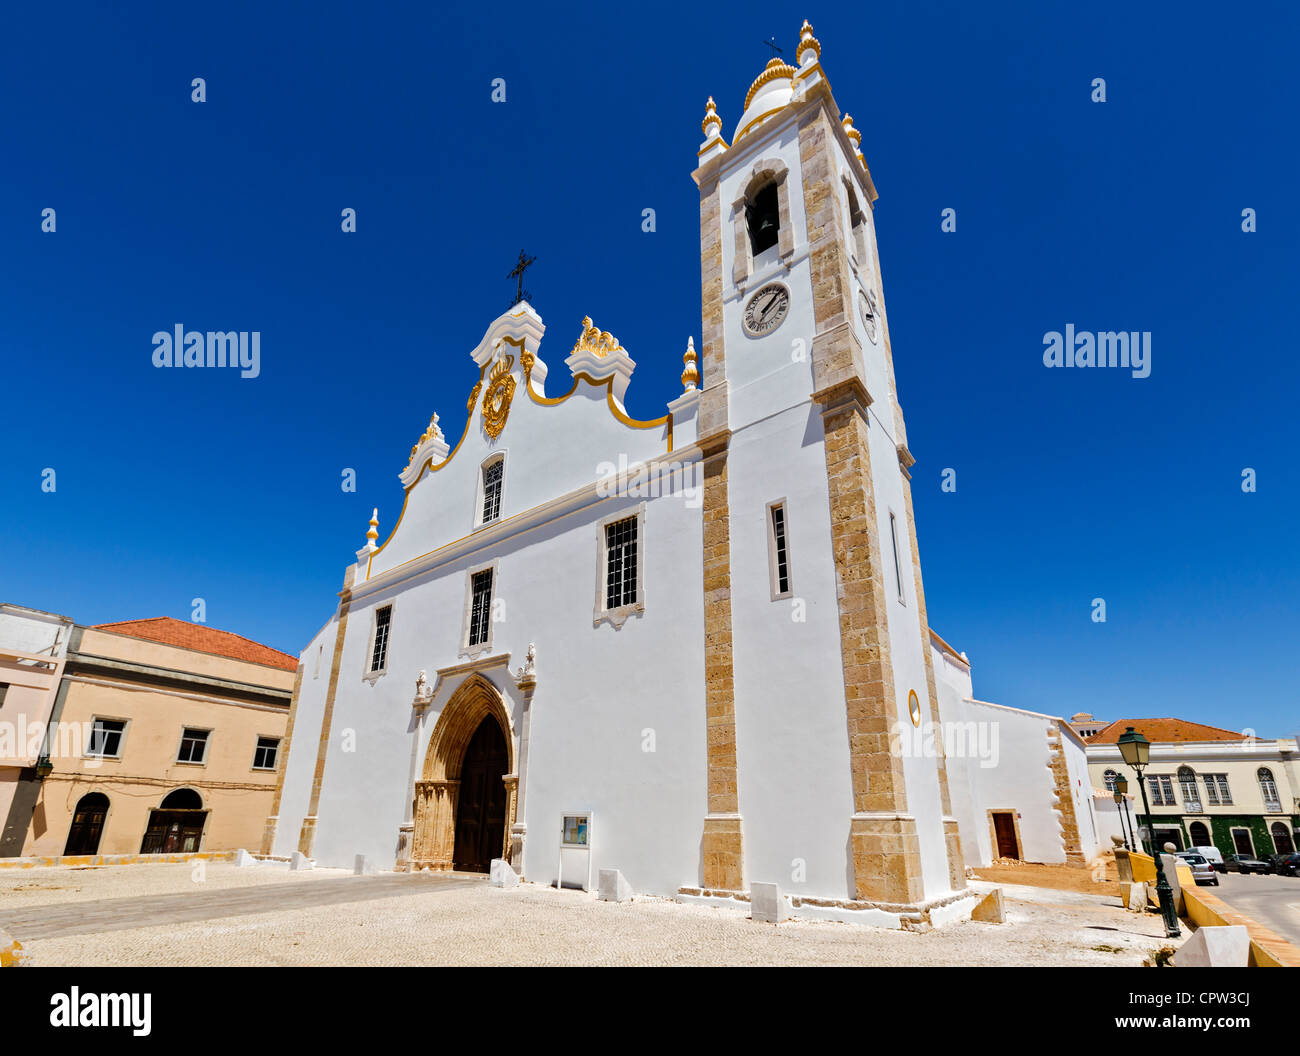 Igreja da Nossa Senhora da Conceição in the old town of Portimao, Algarve, Portugal Stock Photo